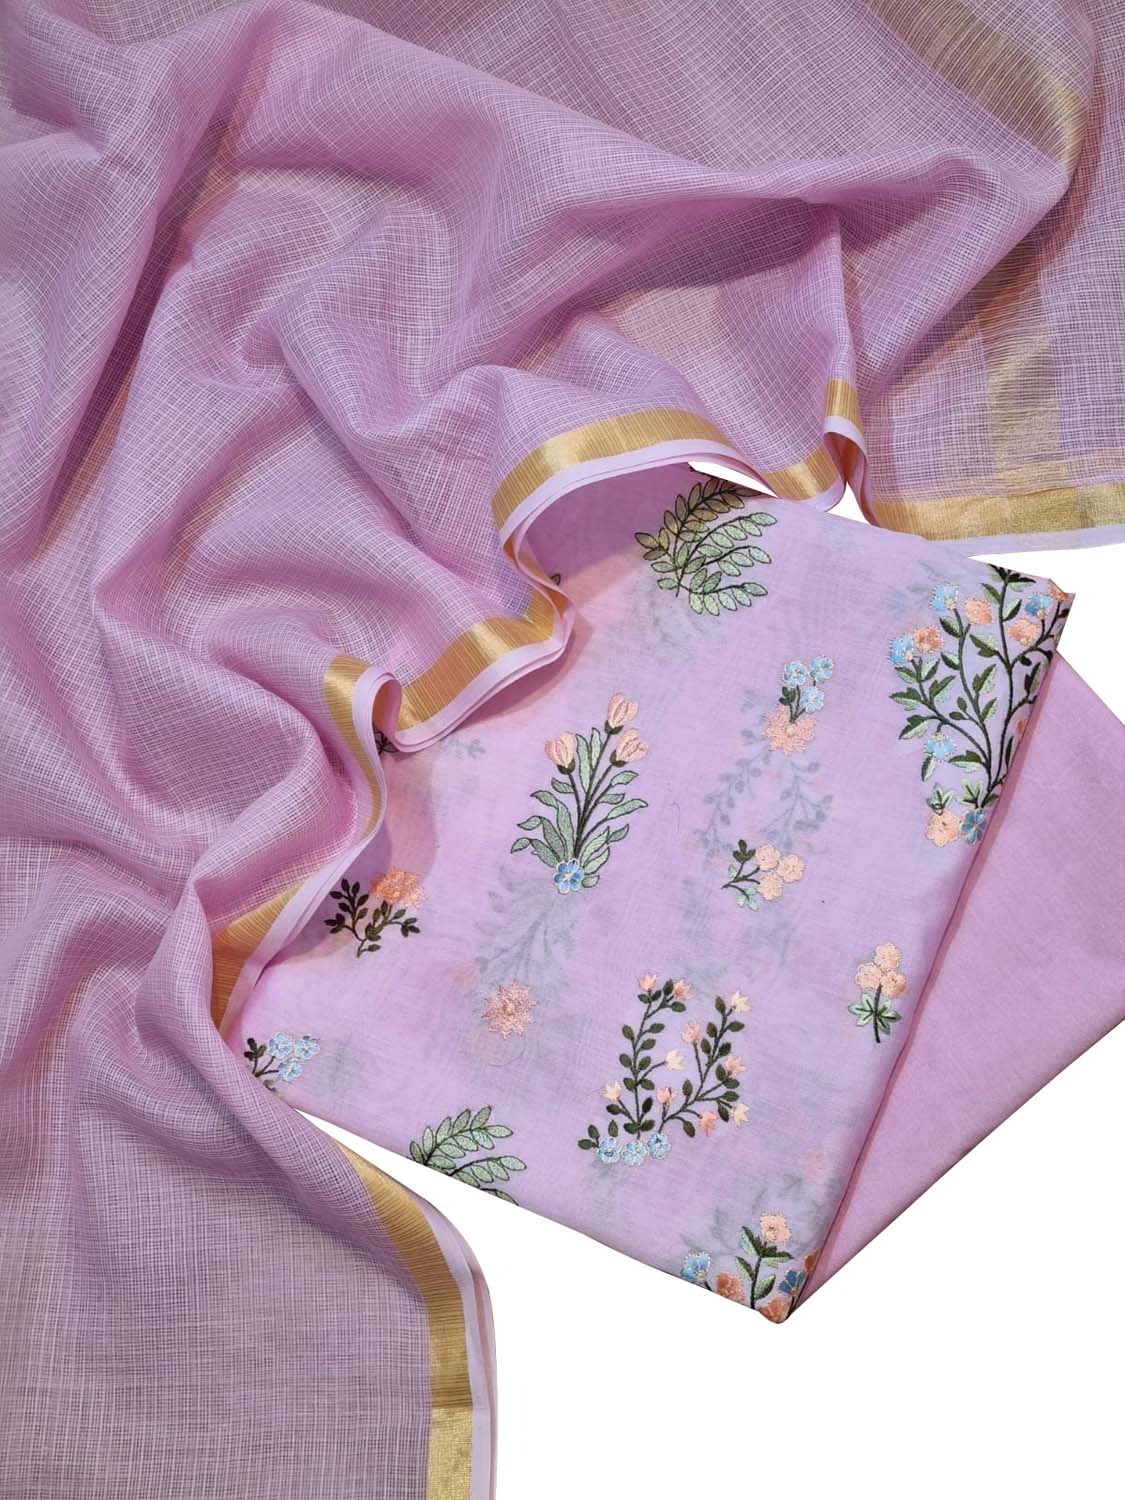 Pink Banarasi Embroidered Chanderi Silk Three Piece Unstitched Suit Set With Cotton Kota Checks Dupatta - Luxurion World